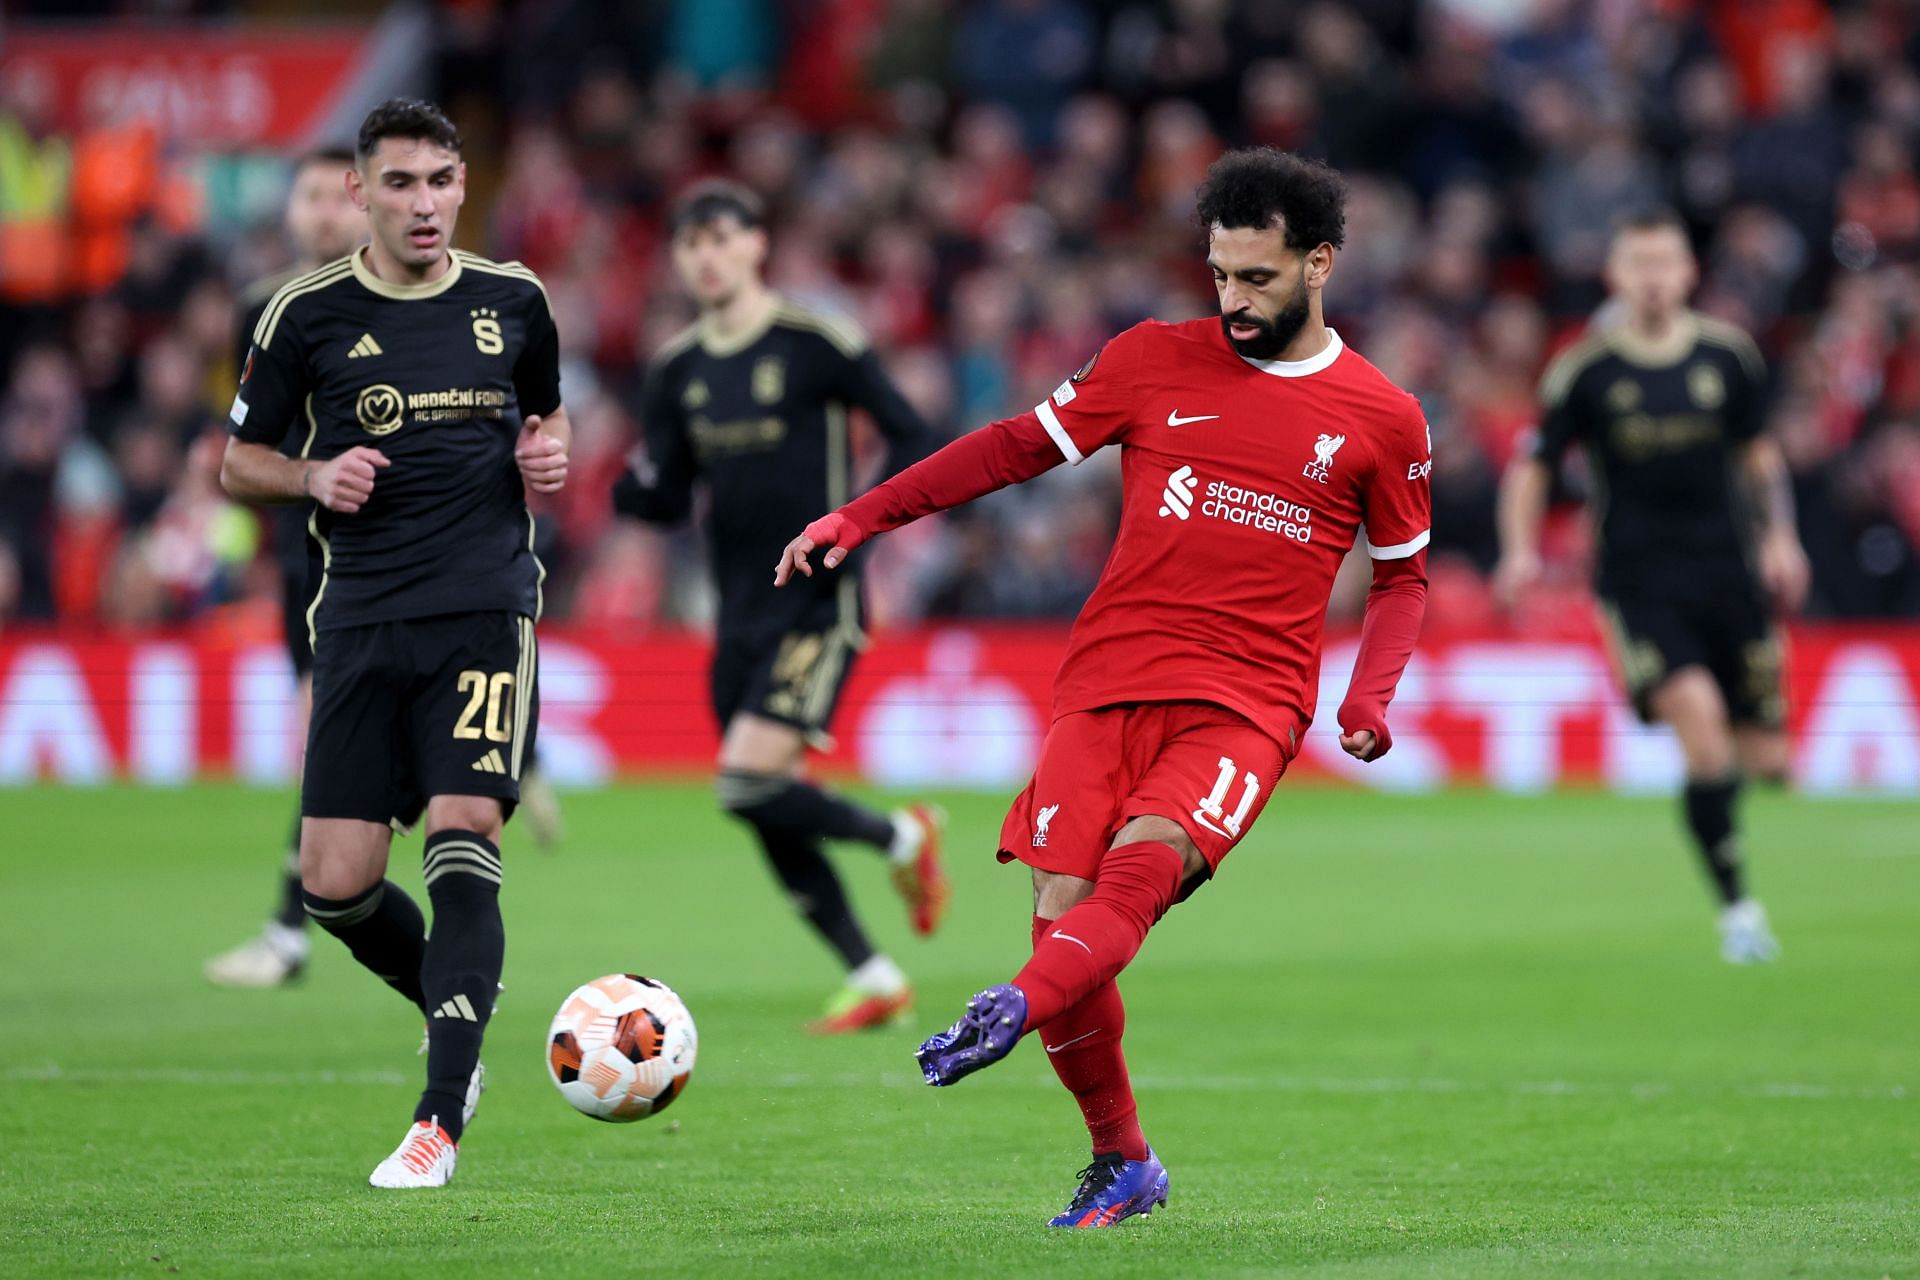 Liverpool attacker Mohamed Salah